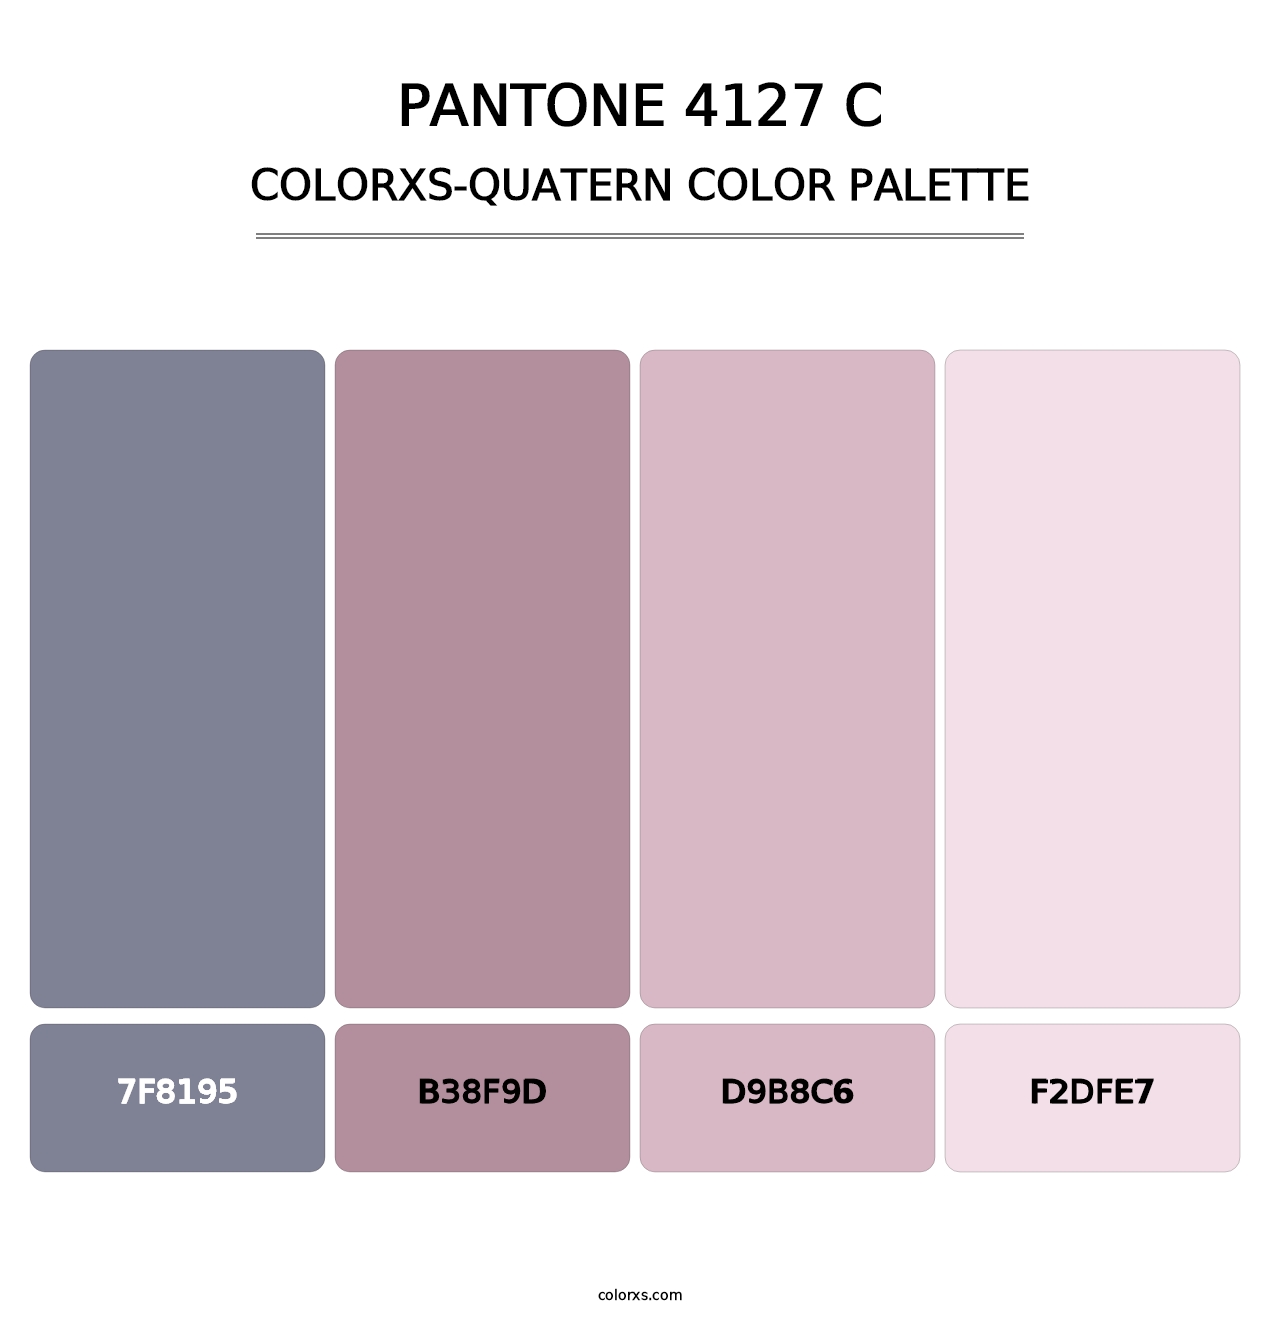 PANTONE 4127 C - Colorxs Quatern Palette